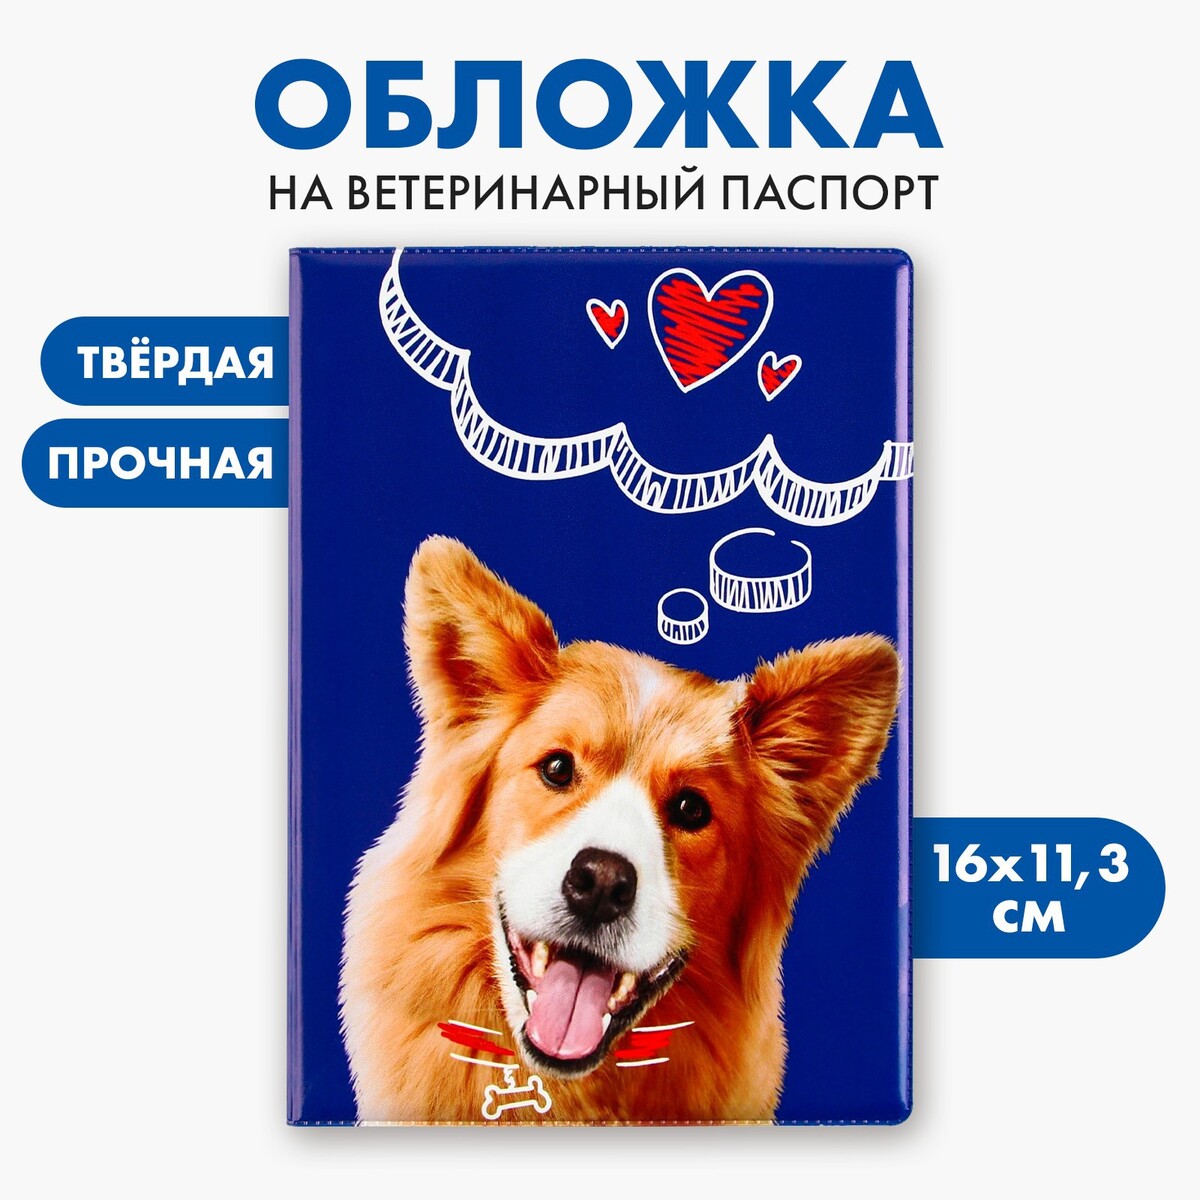 Обложка на ветеринарный паспорт Пушистое счастье